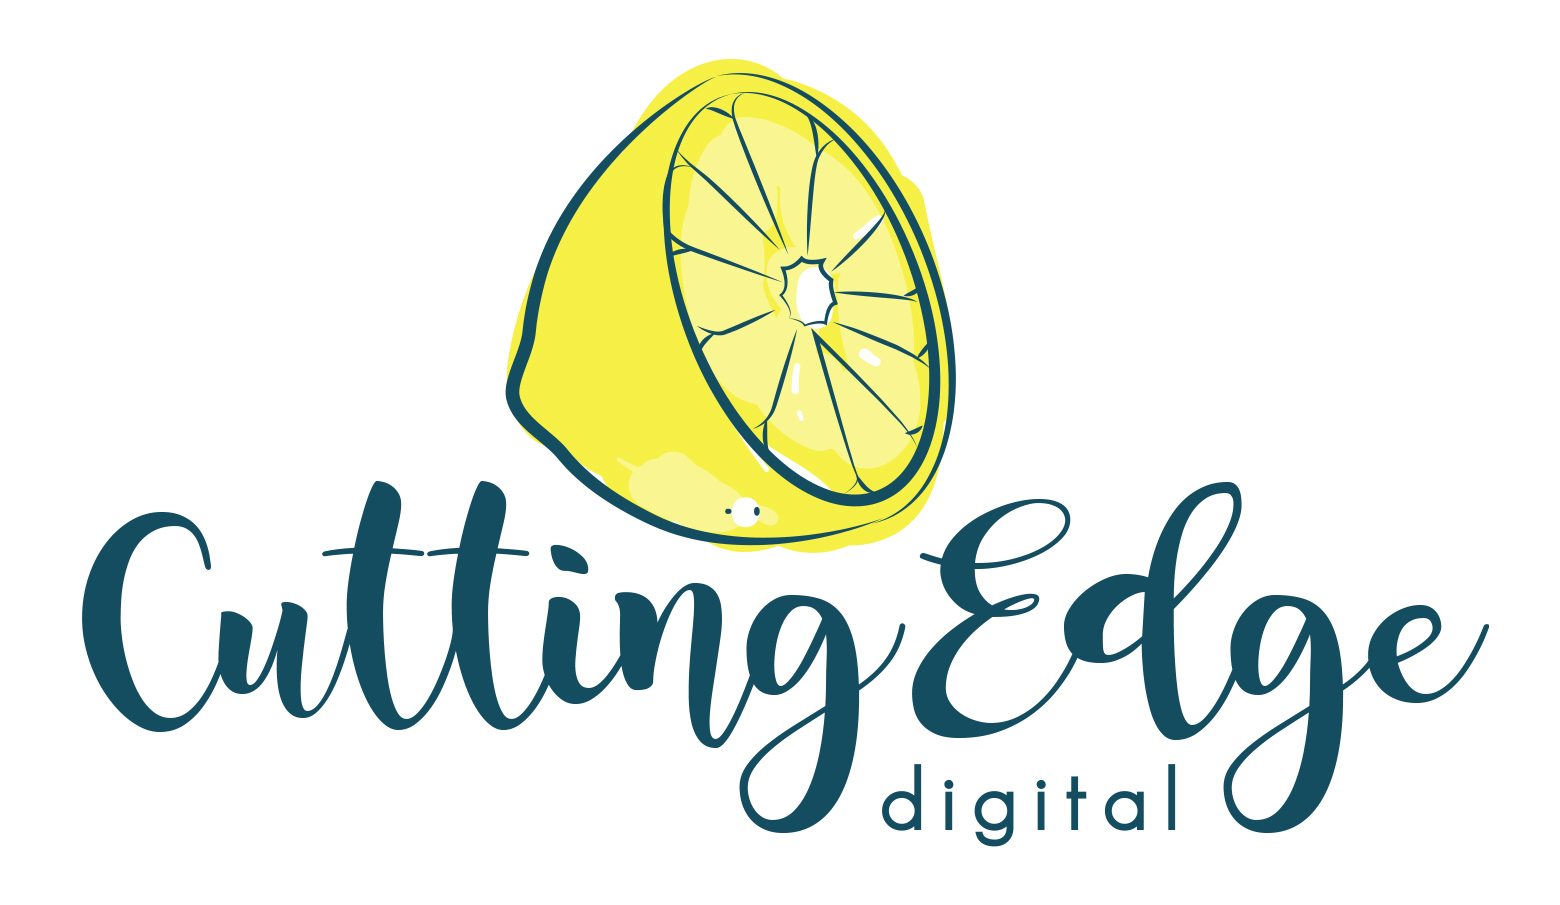 Cutting Edge Digital